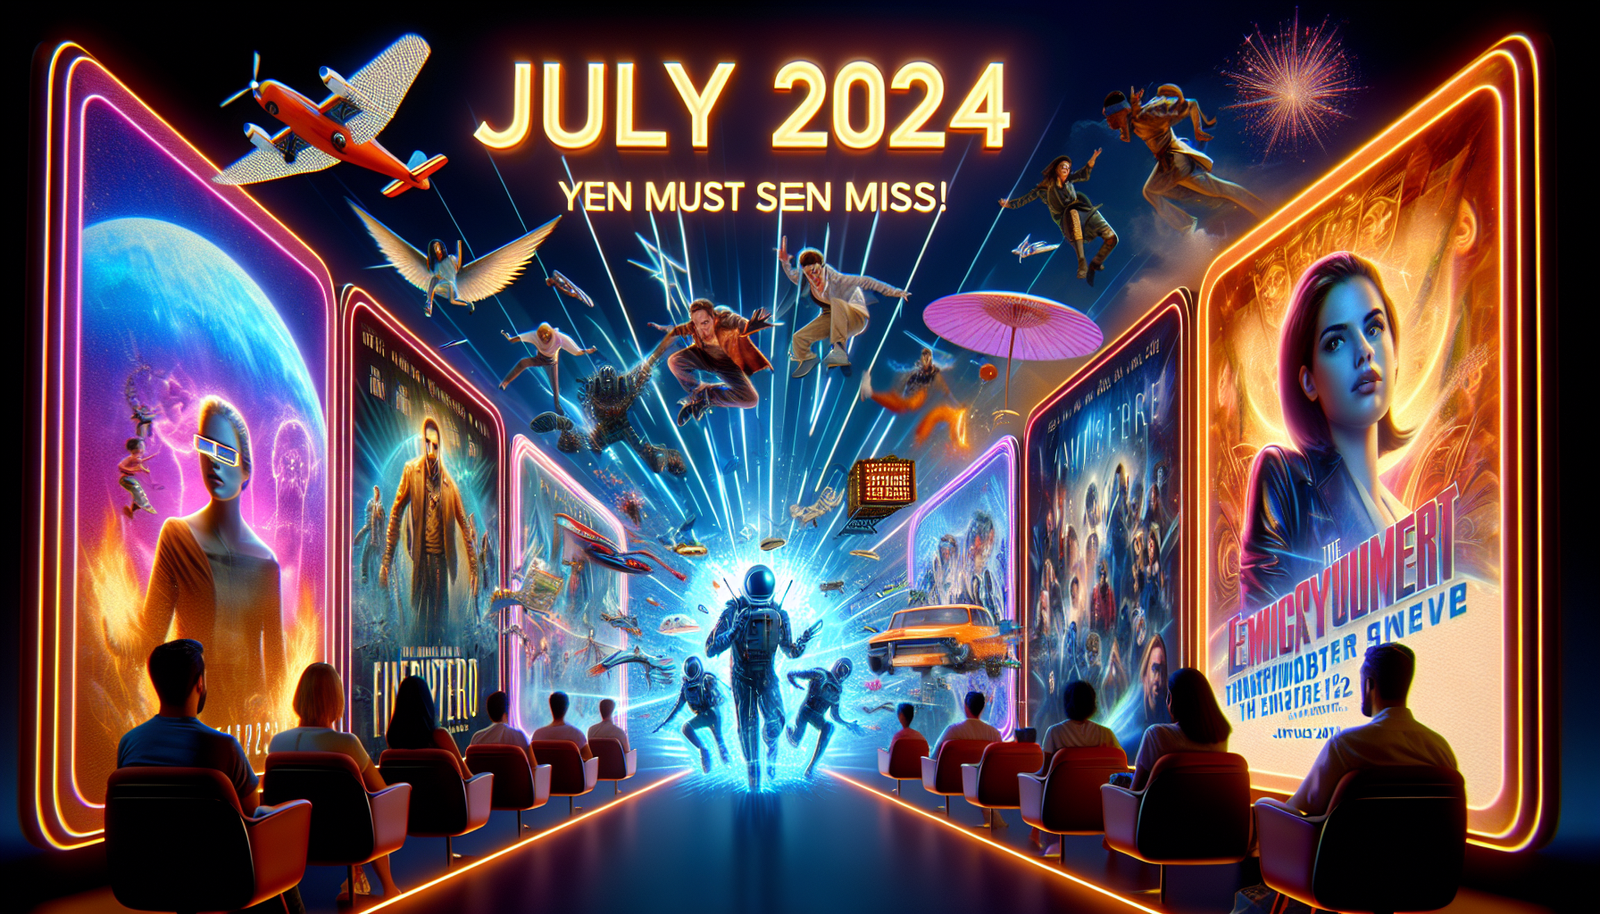 Entdecken Sie die unglaublichen neuen Shows und Filme, die im Juli 2024 auf Netflix erscheinen und die Sie sich einfach nicht entgehen lassen dürfen. Machen Sie sich bereit zum Staunen!